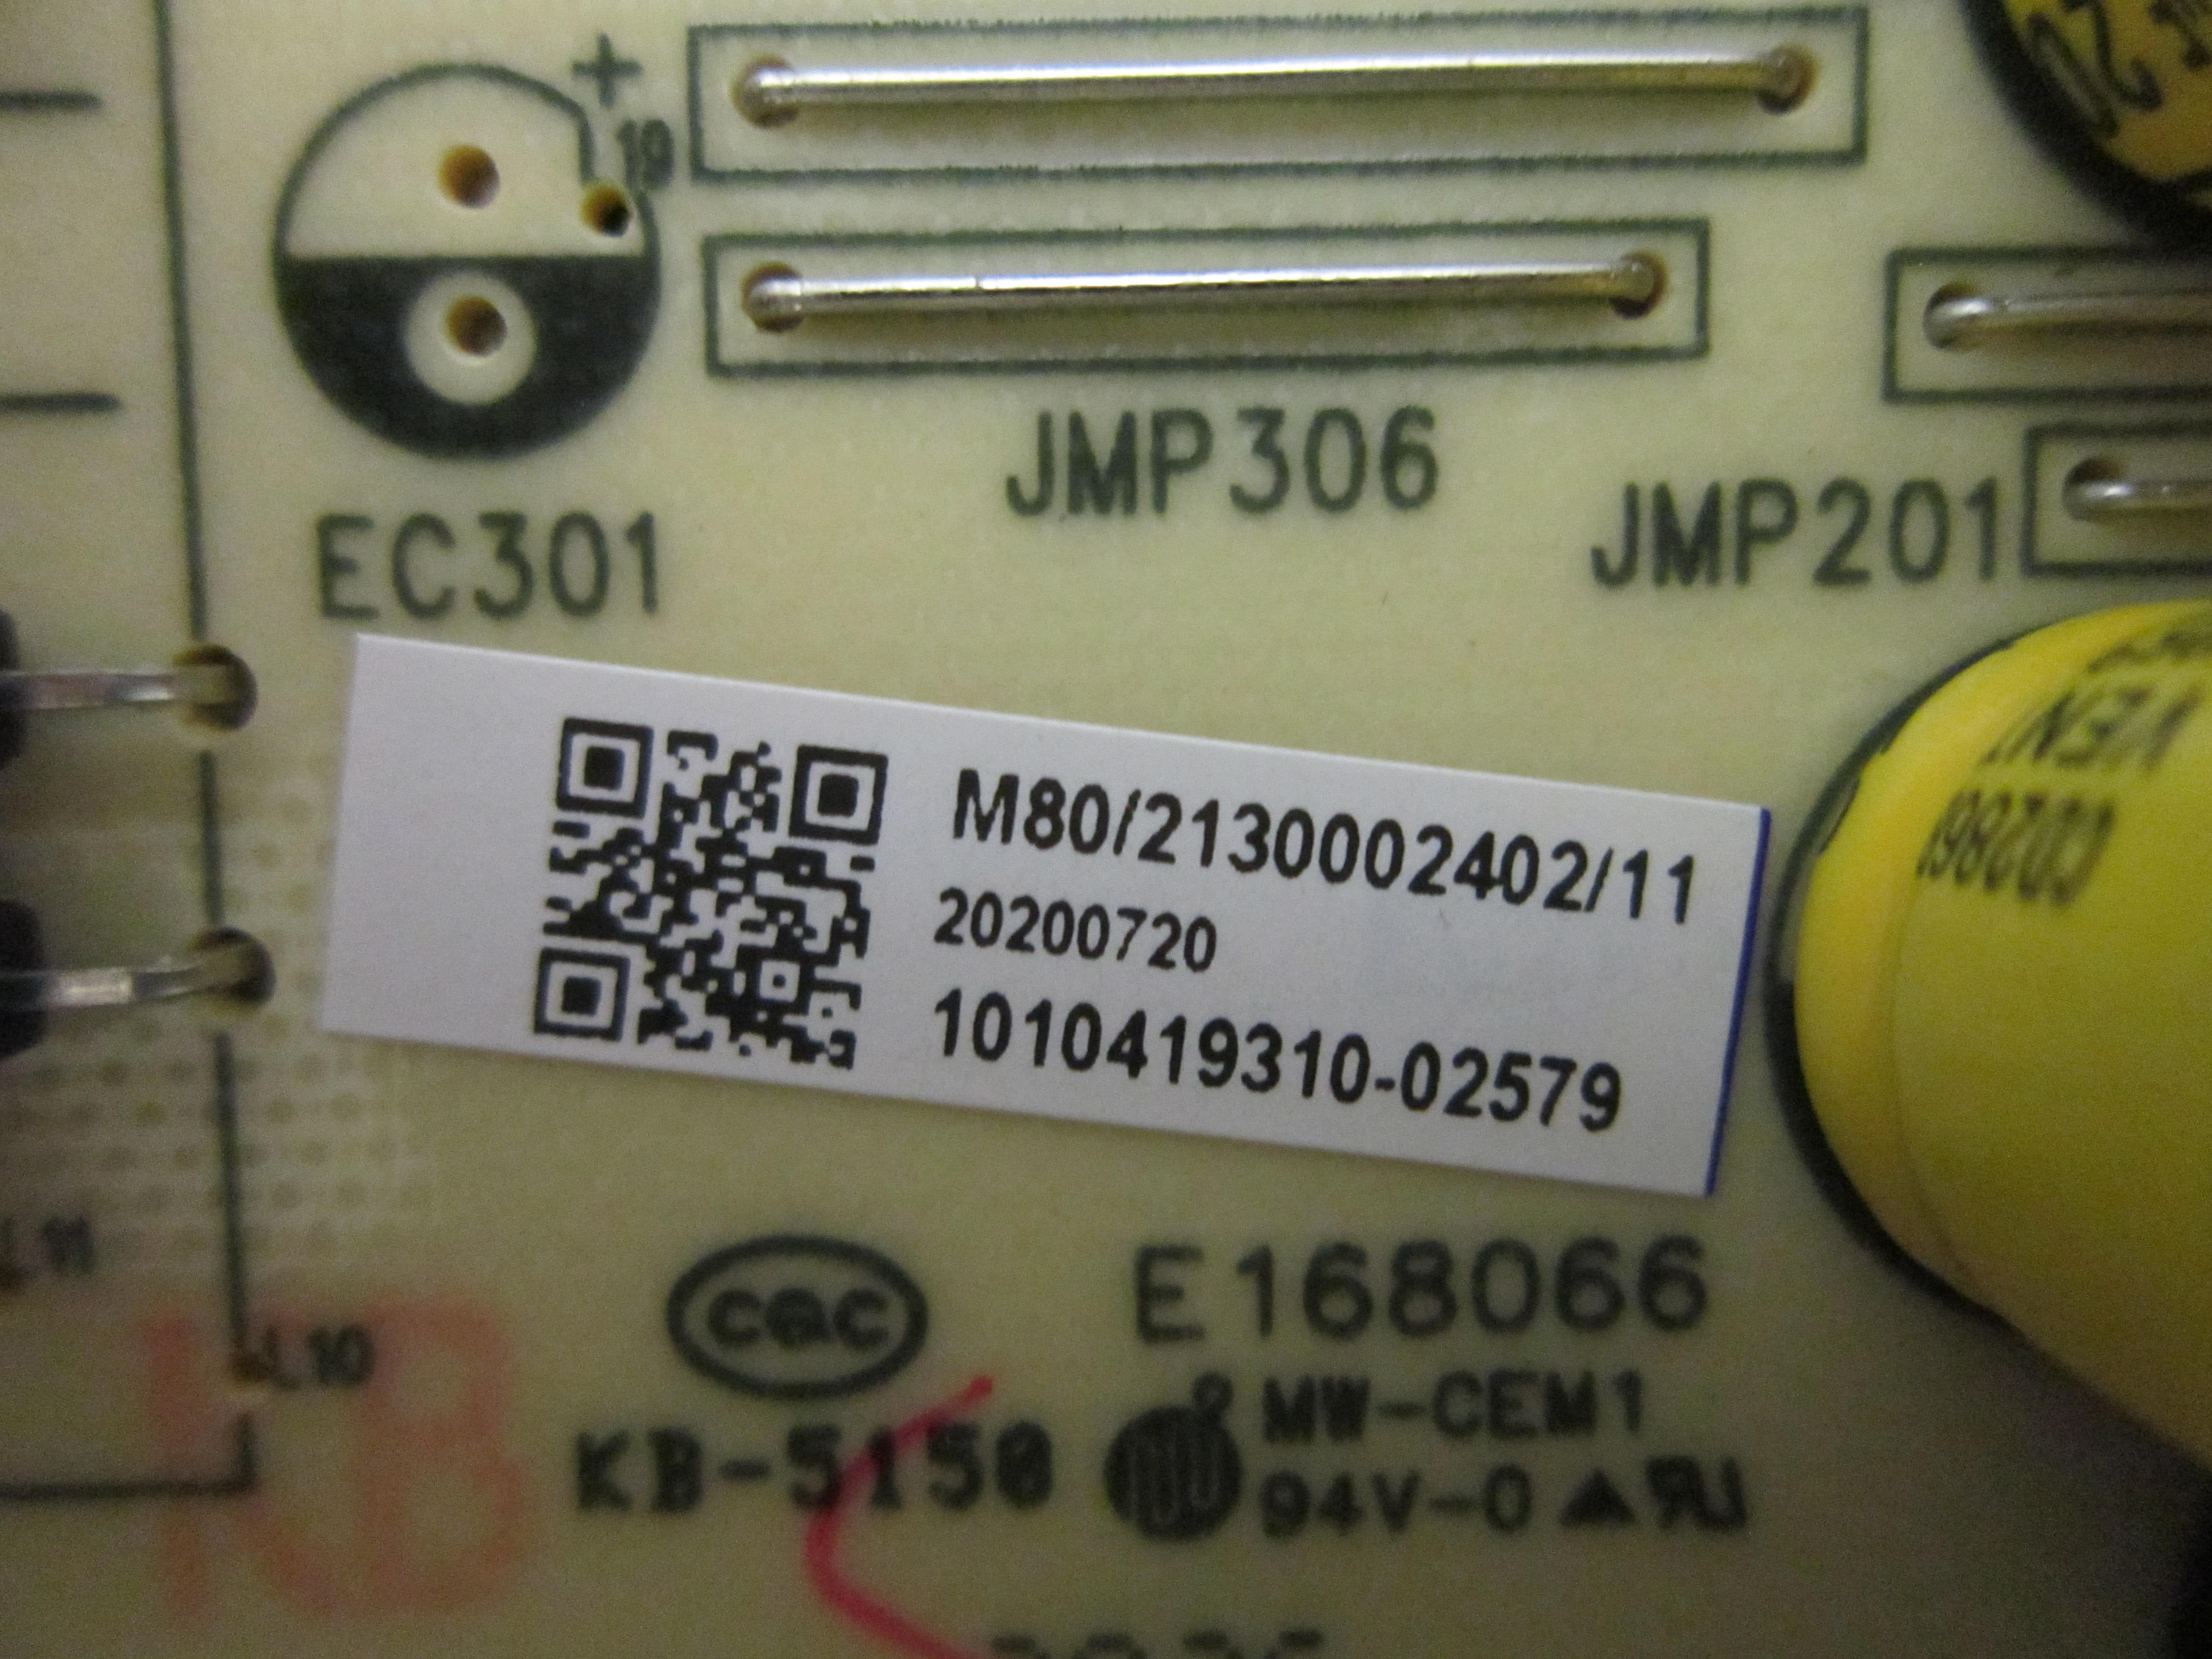 Element E4AA55R, RTRU5527-B Power Board (TV5502-ZC02-01 